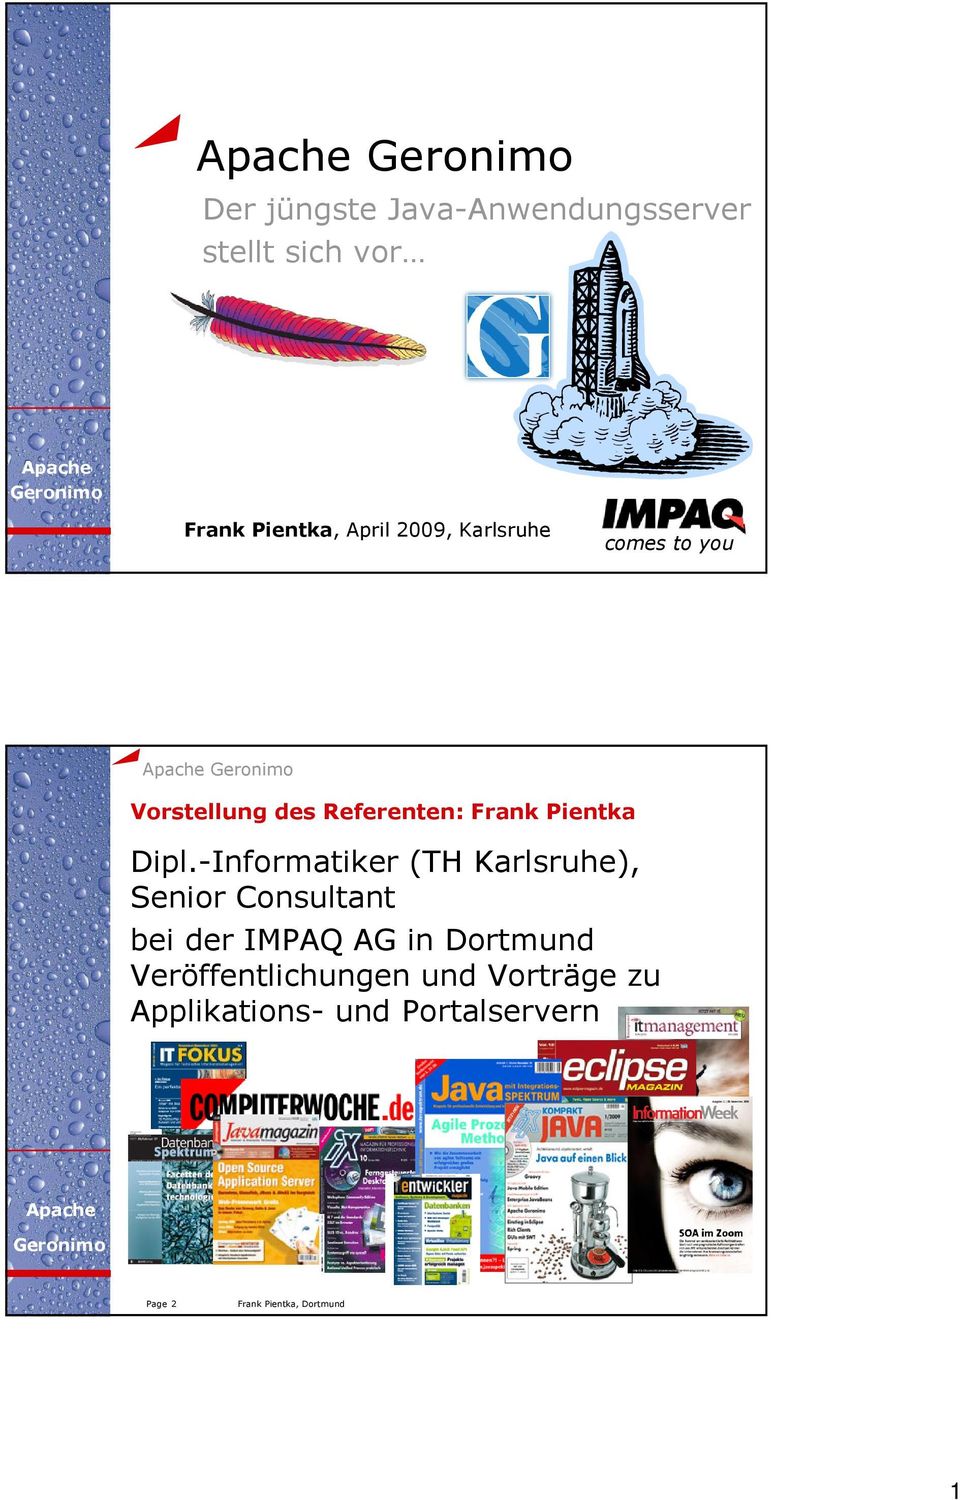 Dipl.-Informatiker (TH Karlsruhe), Senior Consultant bei der IMPAQ AG in